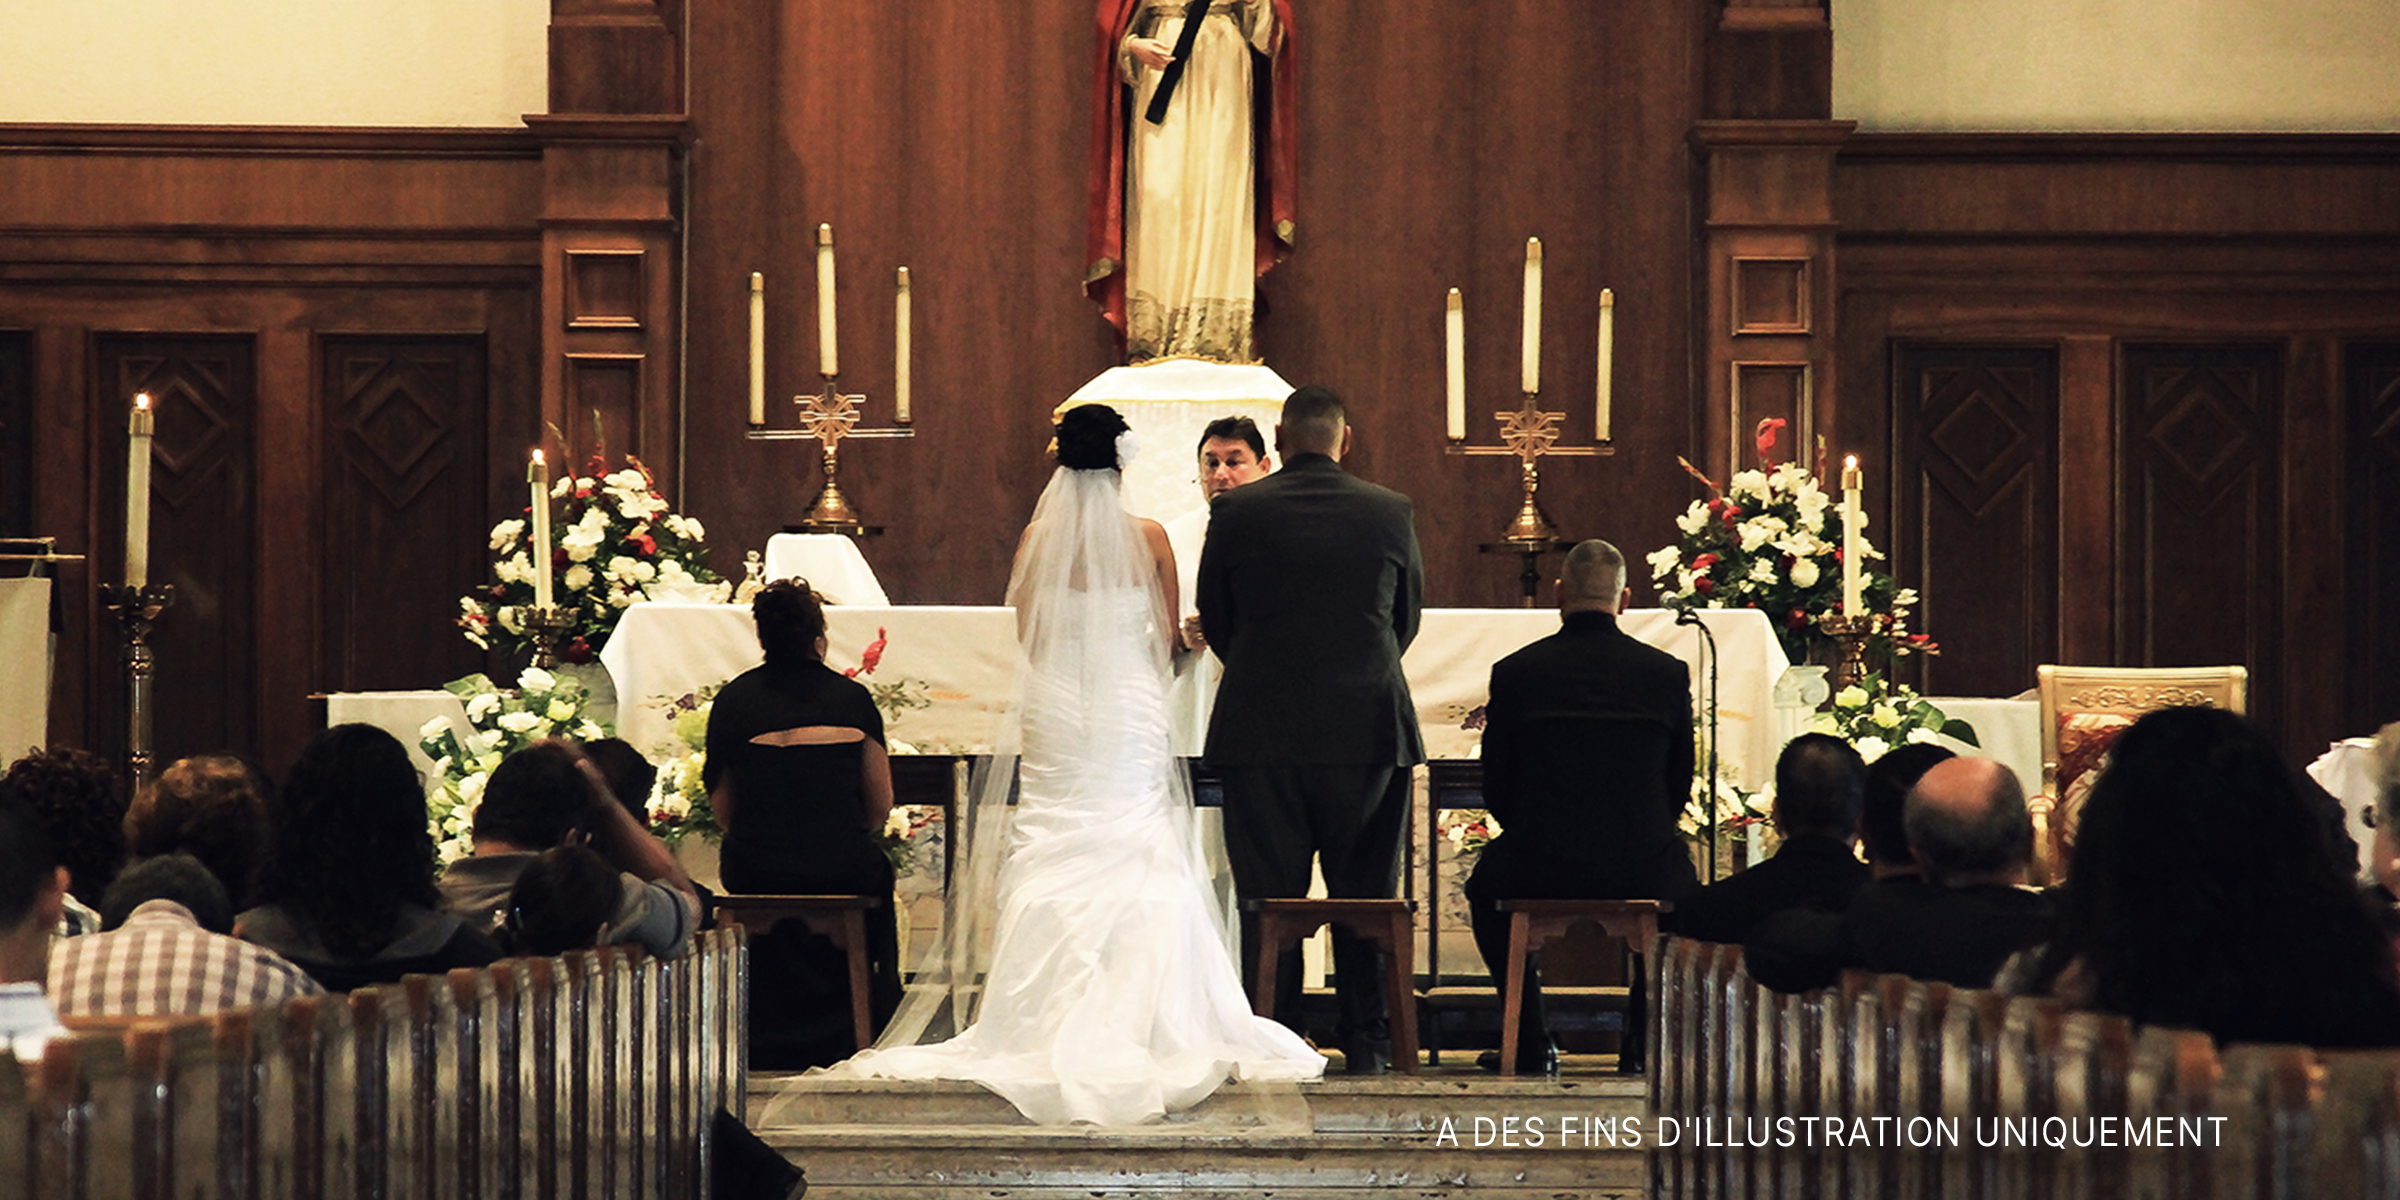 Un couple en train de se marier | Source : Flickr / demxx (CC BY 2.0)